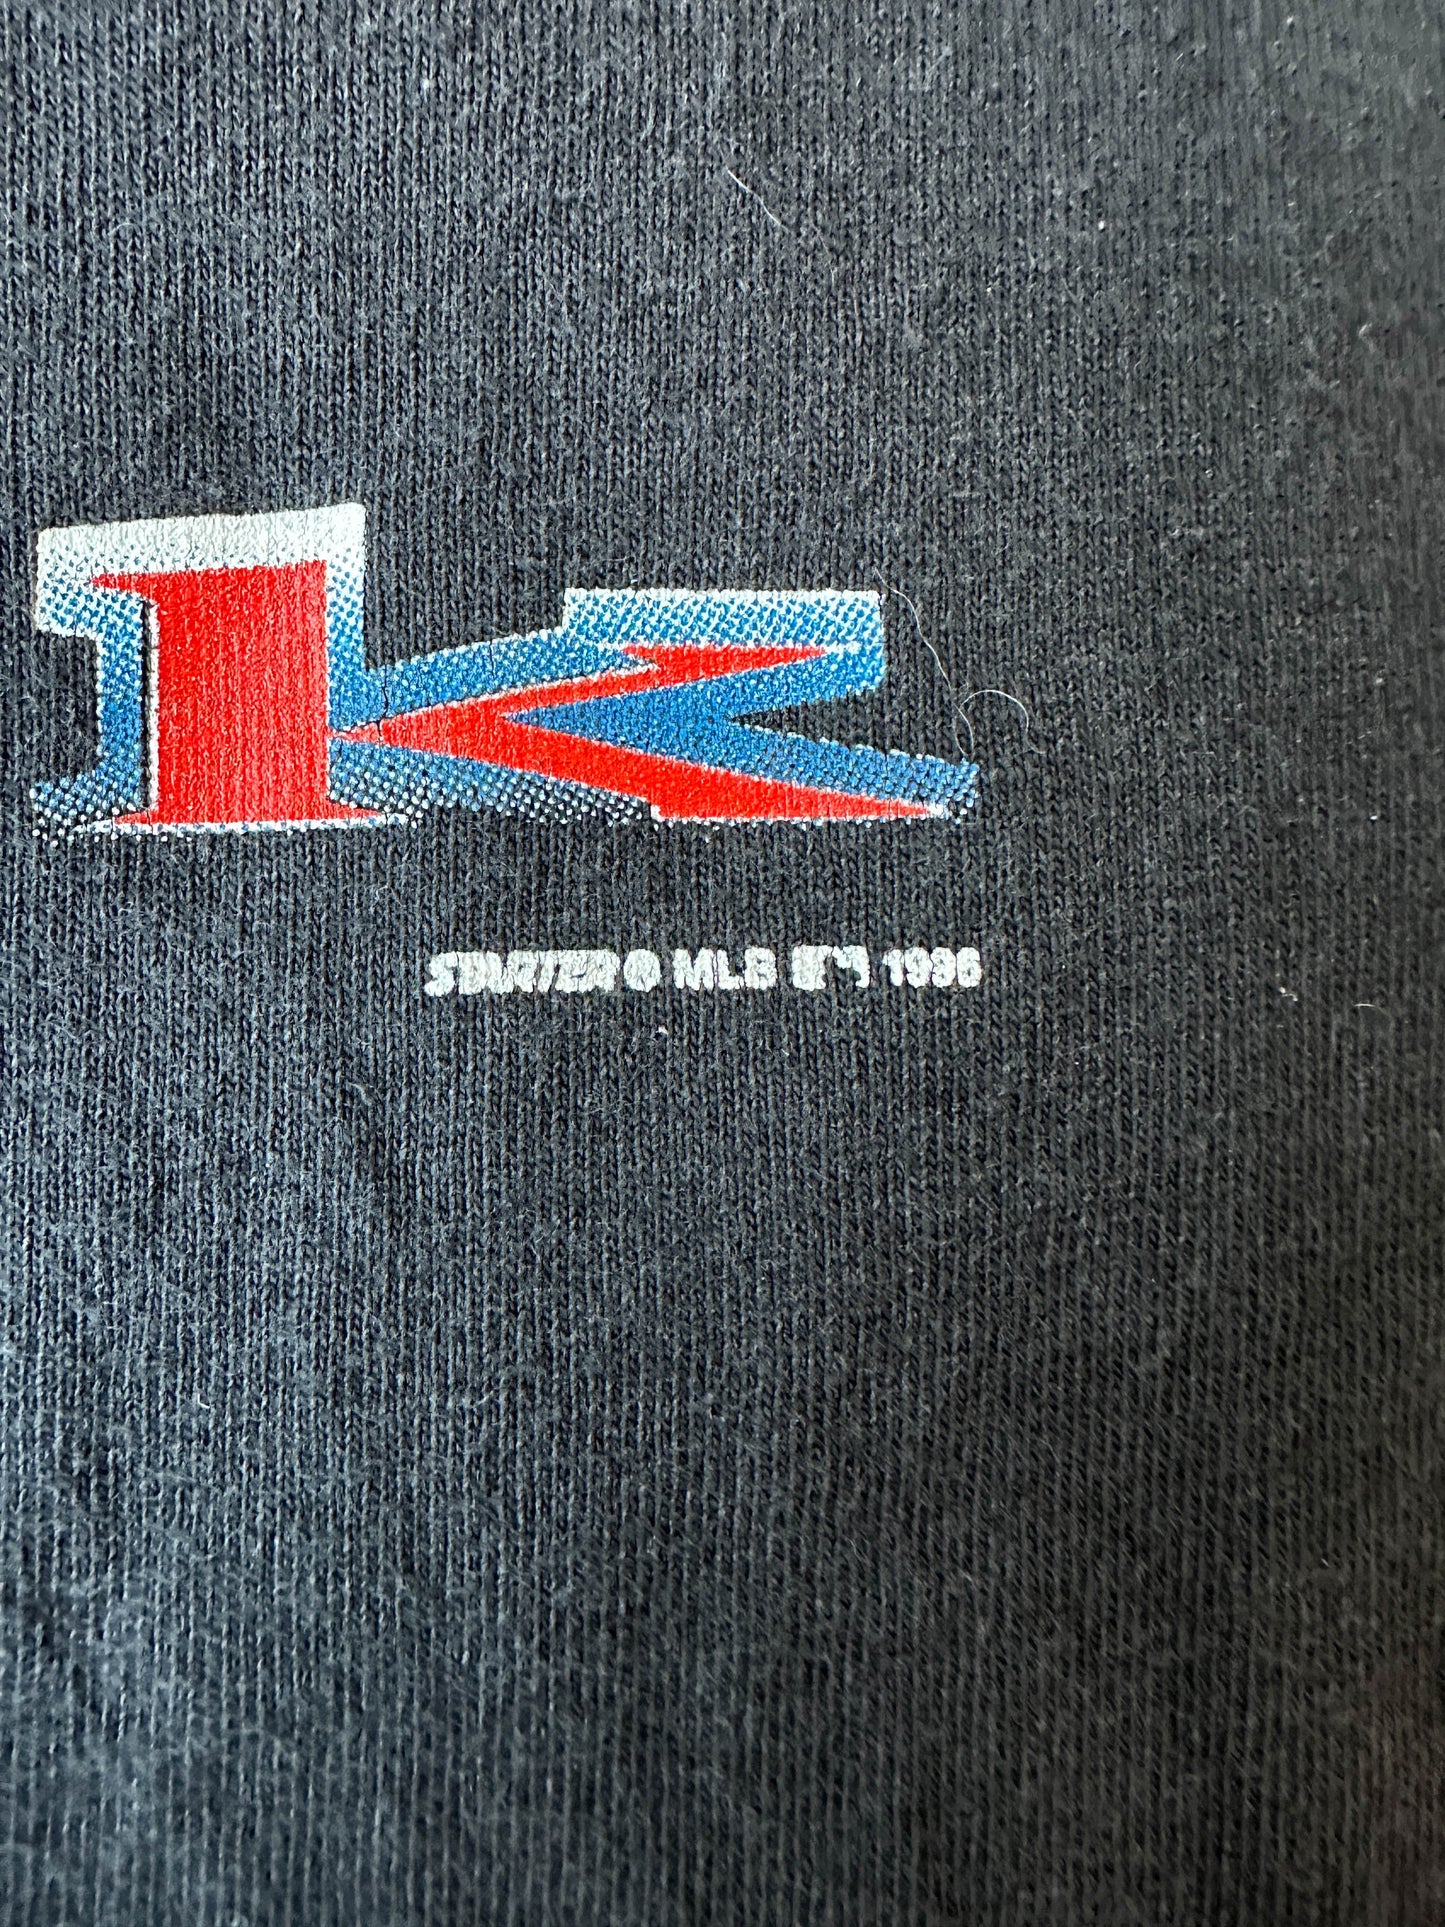 Camiseta Starter MLB New York Yankees 1996